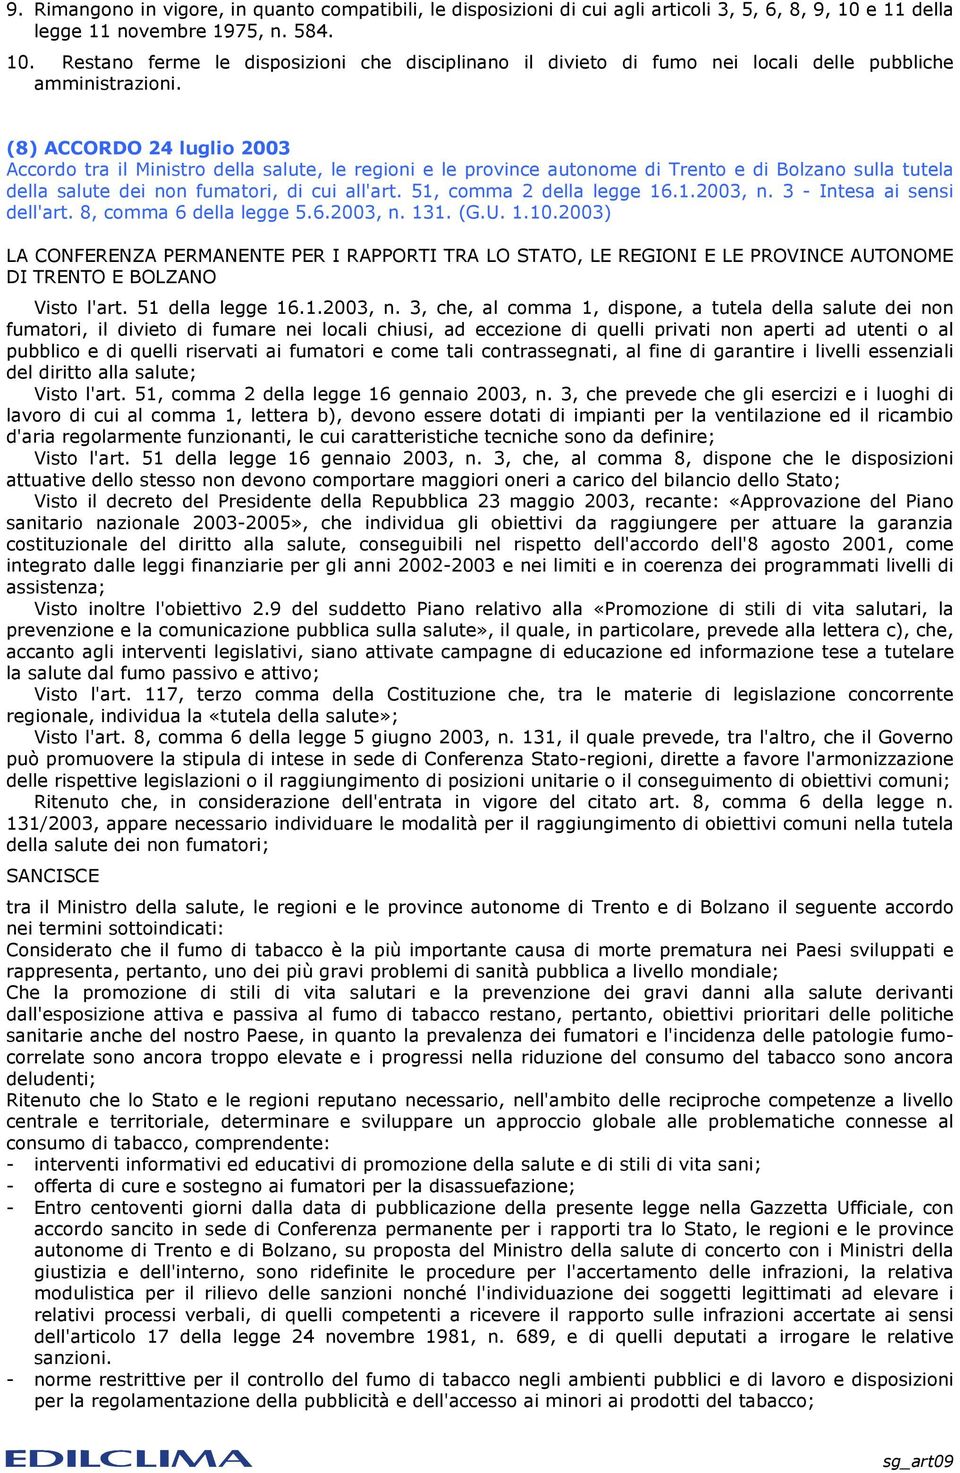 (8) ACCORDO 24 luglio 2003 Accordo tra il Ministro della salute, le regioni e le province autonome di Trento e di Bolzano sulla tutela della salute dei non fumatori, di cui all'art.